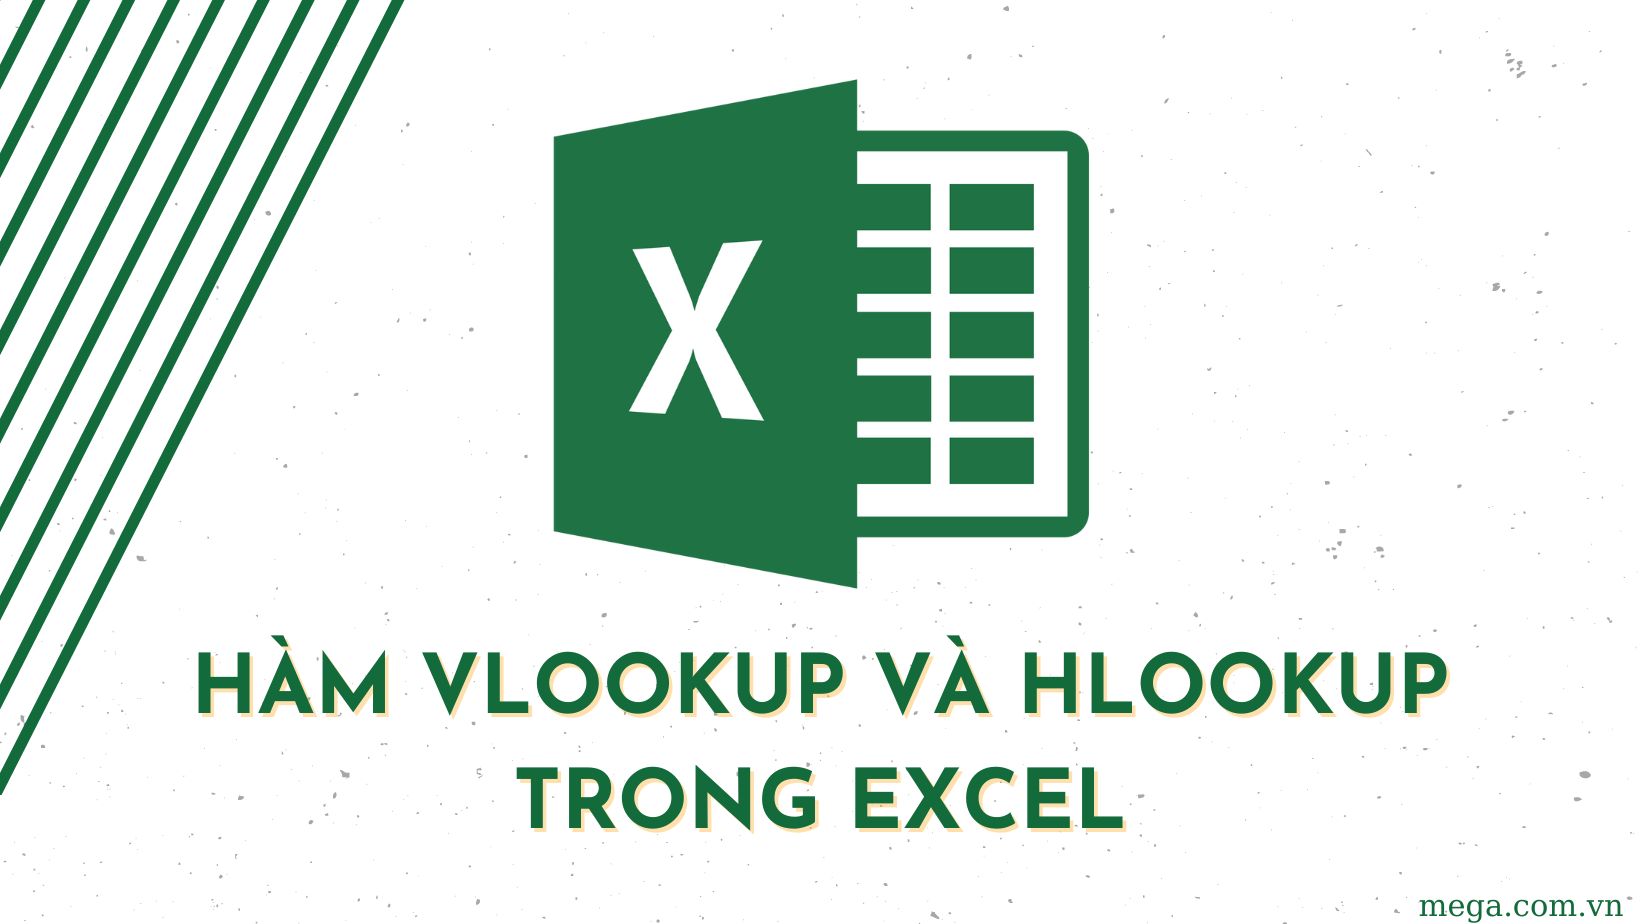 Khi nào nên sử dụng hàm Vlookup và khi nào nên sử dụng hàm Hlookup trong Excel?
